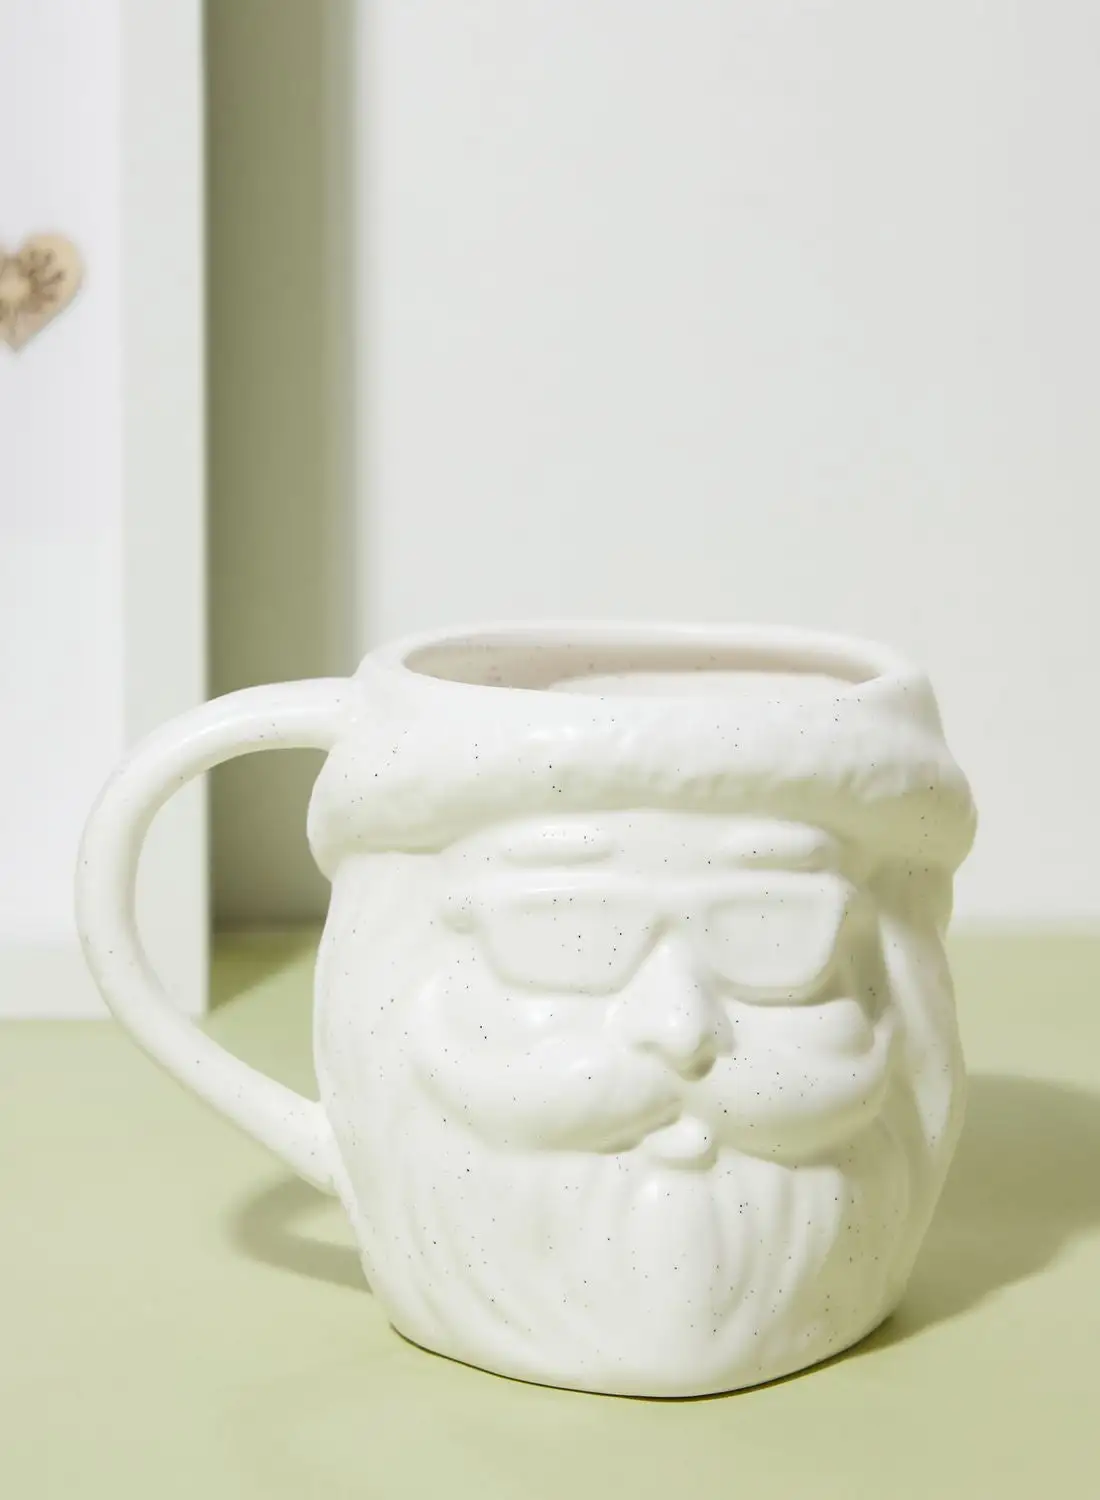 Typo Christmas Novelty Shaped Mug